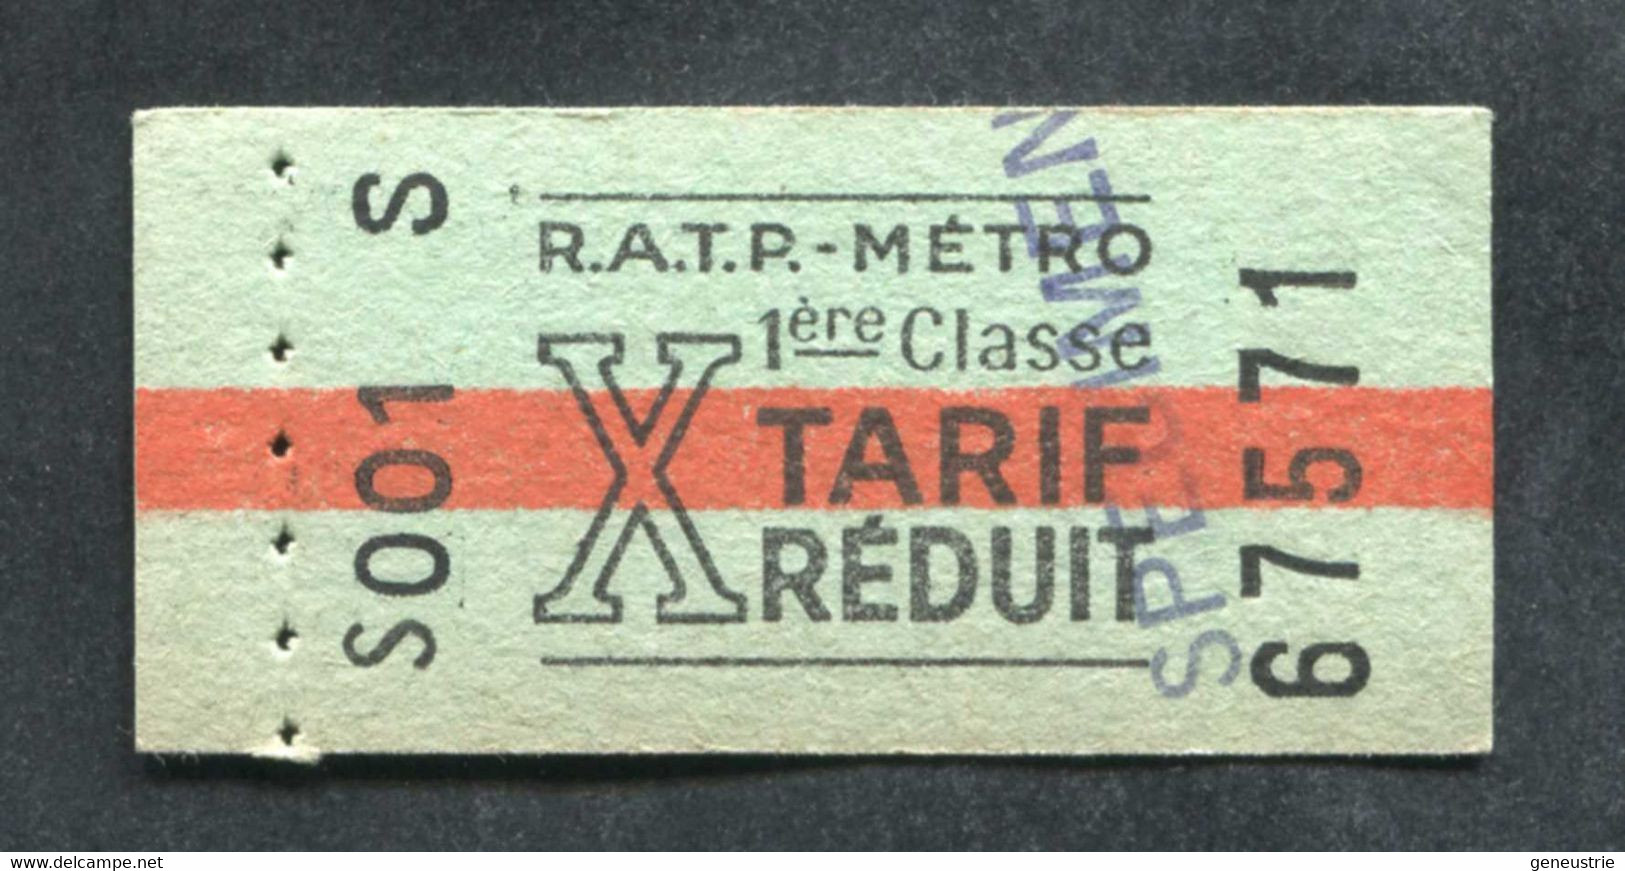 Neuf ! Ticket De Métro Tarif Réduit (issu De Carnet) 1ère Cl "SPECIMEN" Période 1960/1966 - Métropolitain Paris RATP - Europe